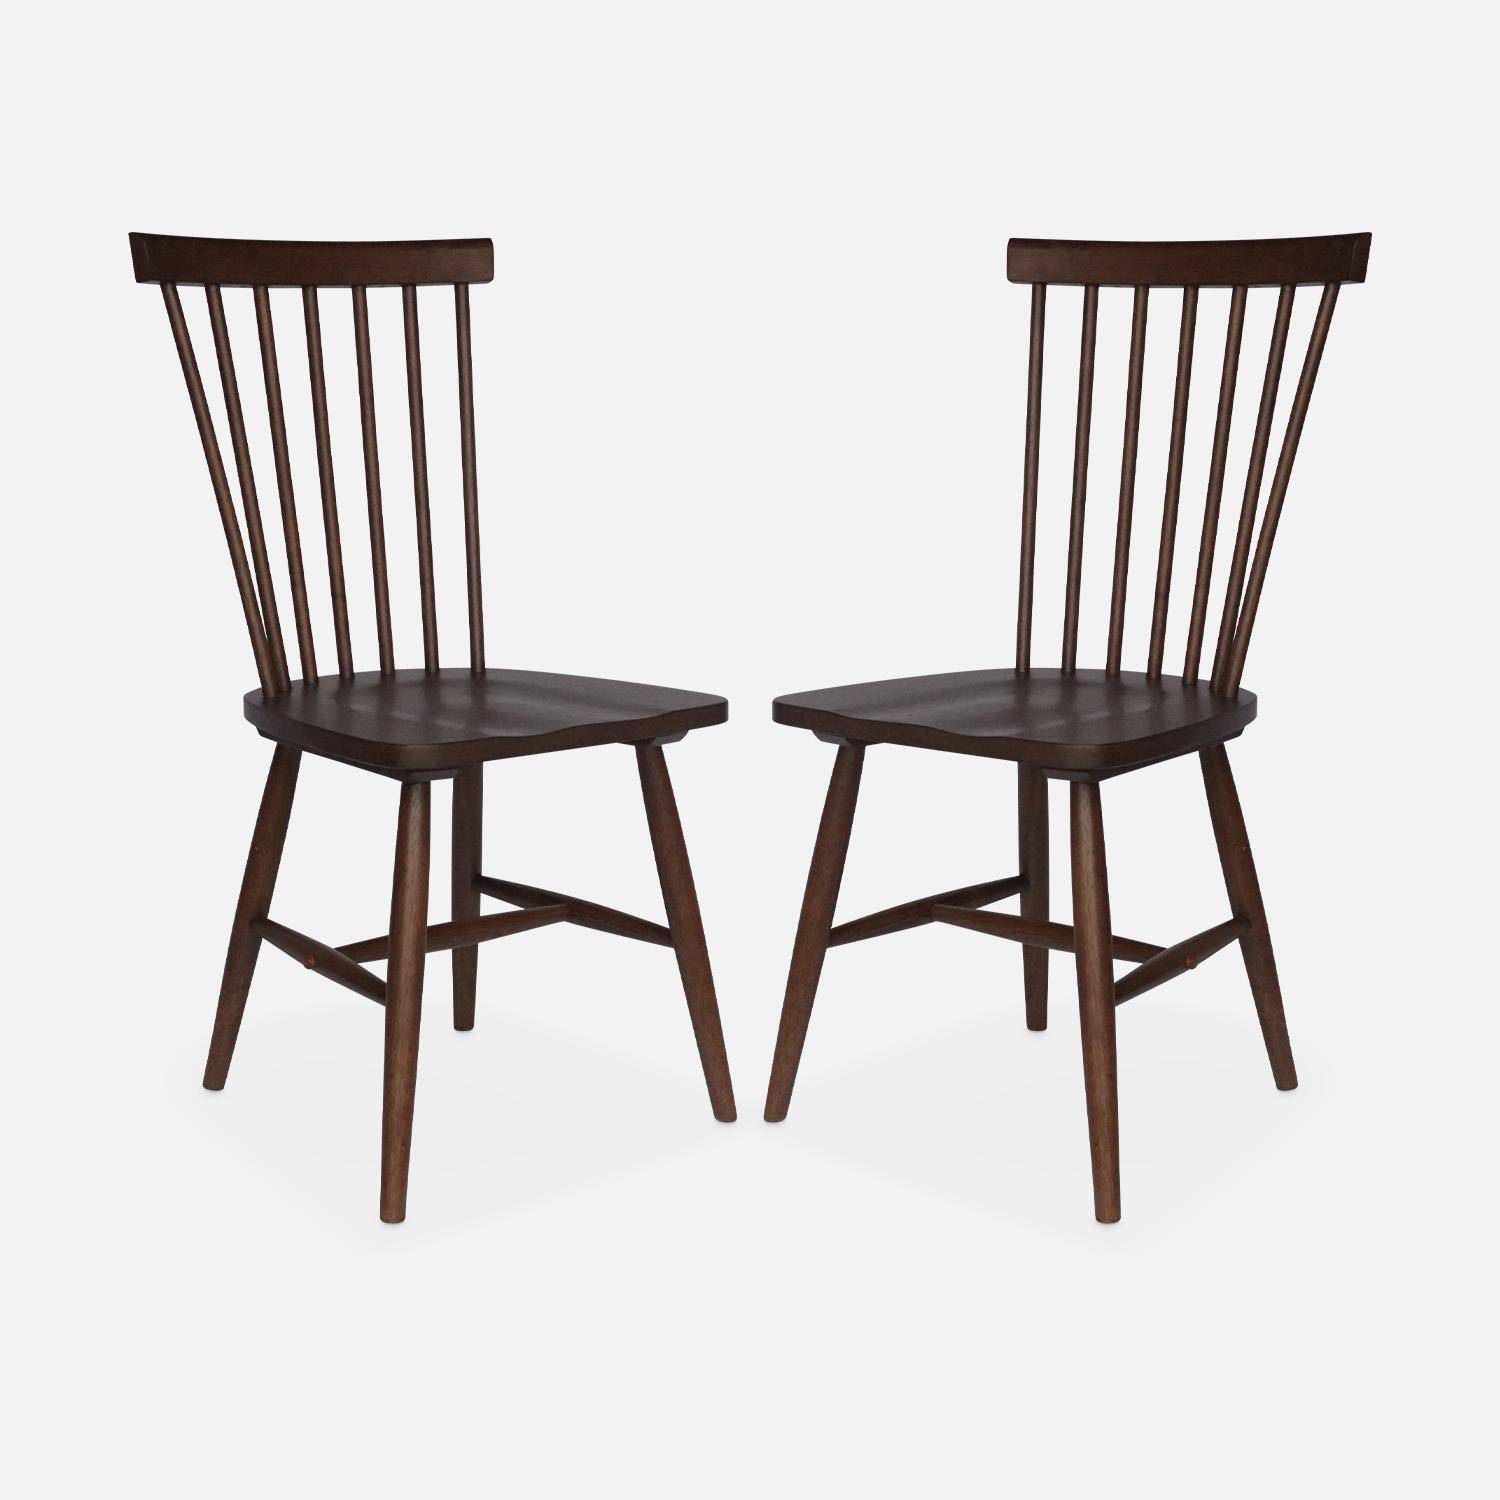 Juego de 2 sillas de nogal con listones de madera de caucho, ROMIE, ancho 50,8 x fondo 44,2 x alto 90cm. Photo5